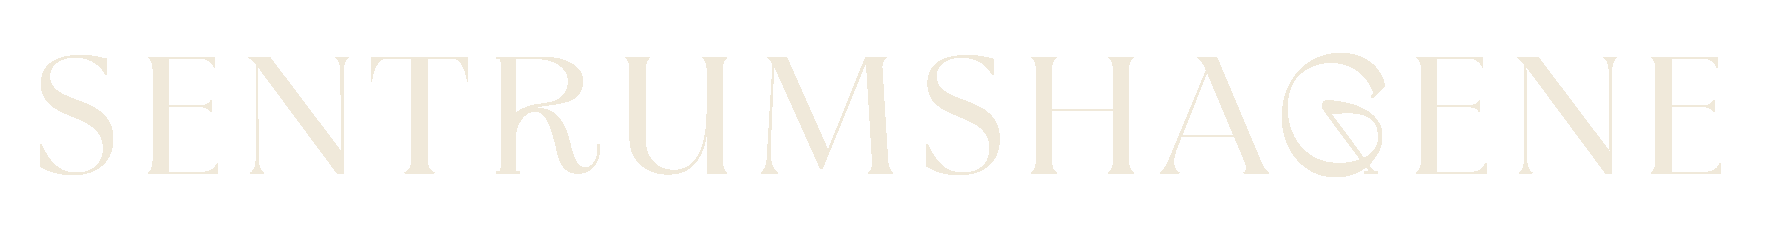 The logo for Sentrumshagene.